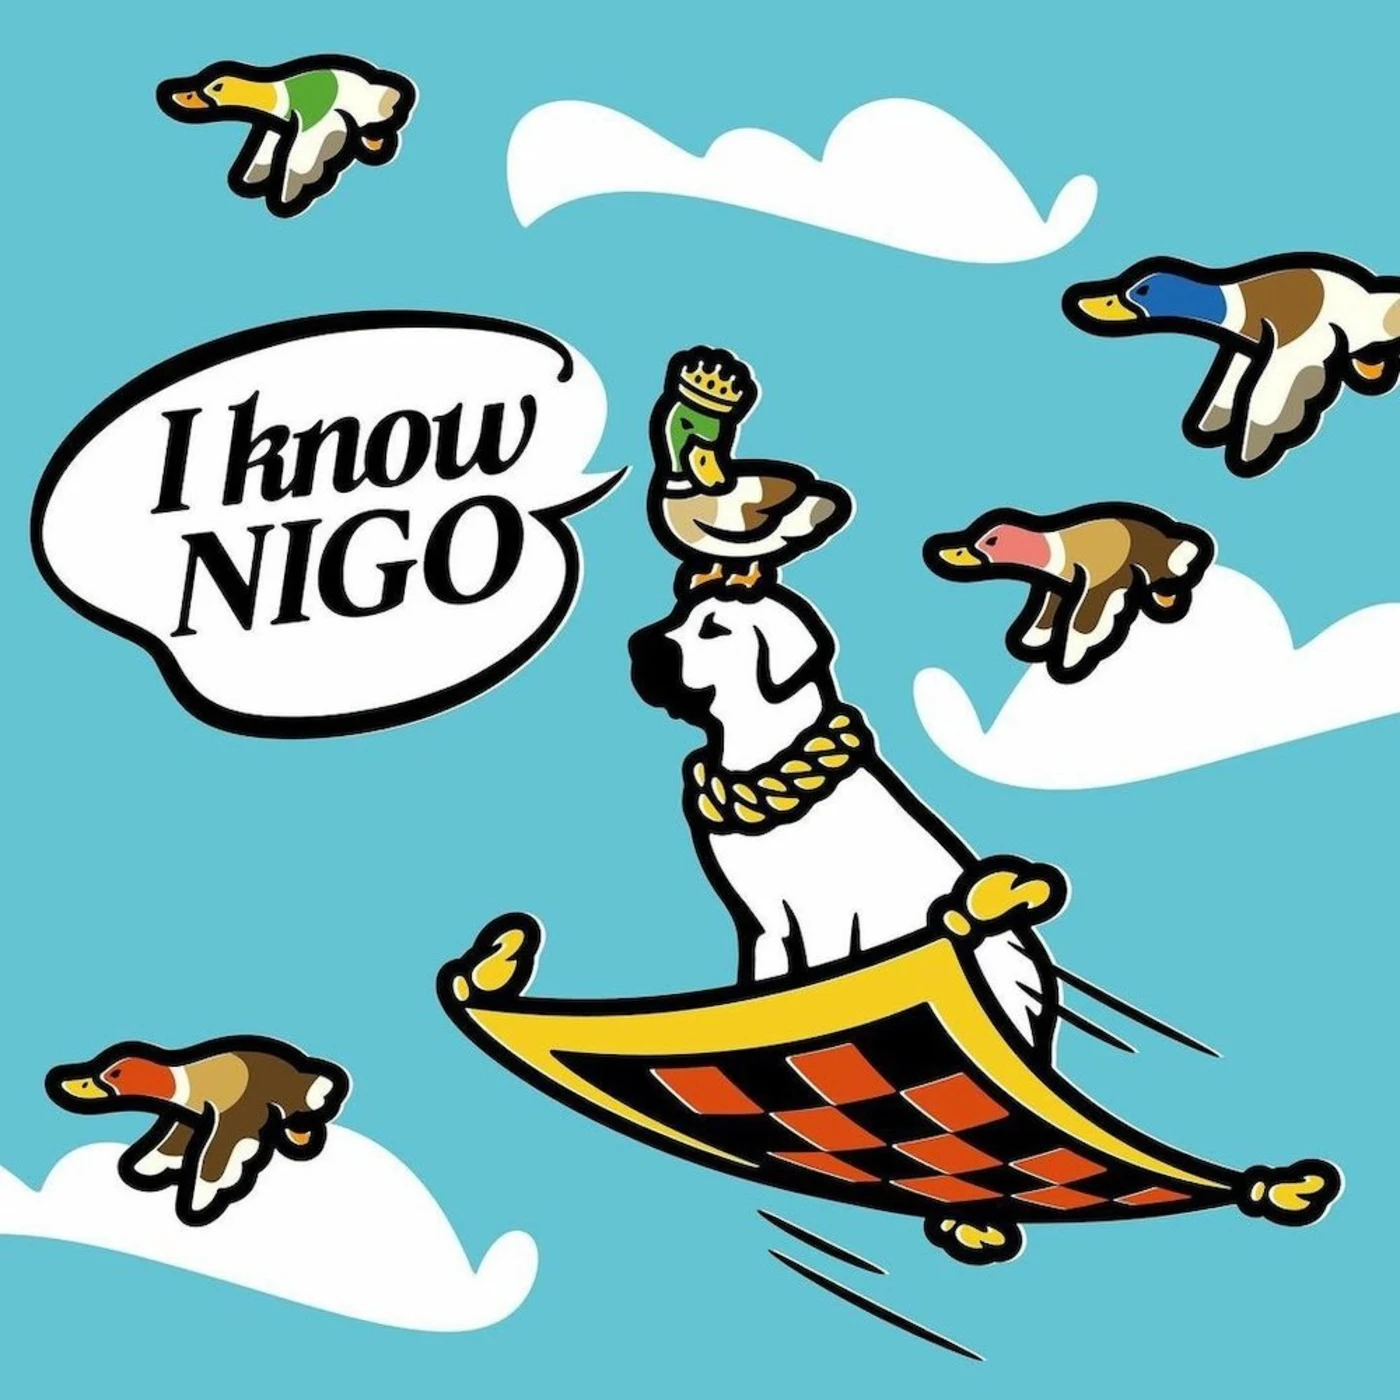 NIGO en la cima con su nuevo álbum 'I Know NIGO!'